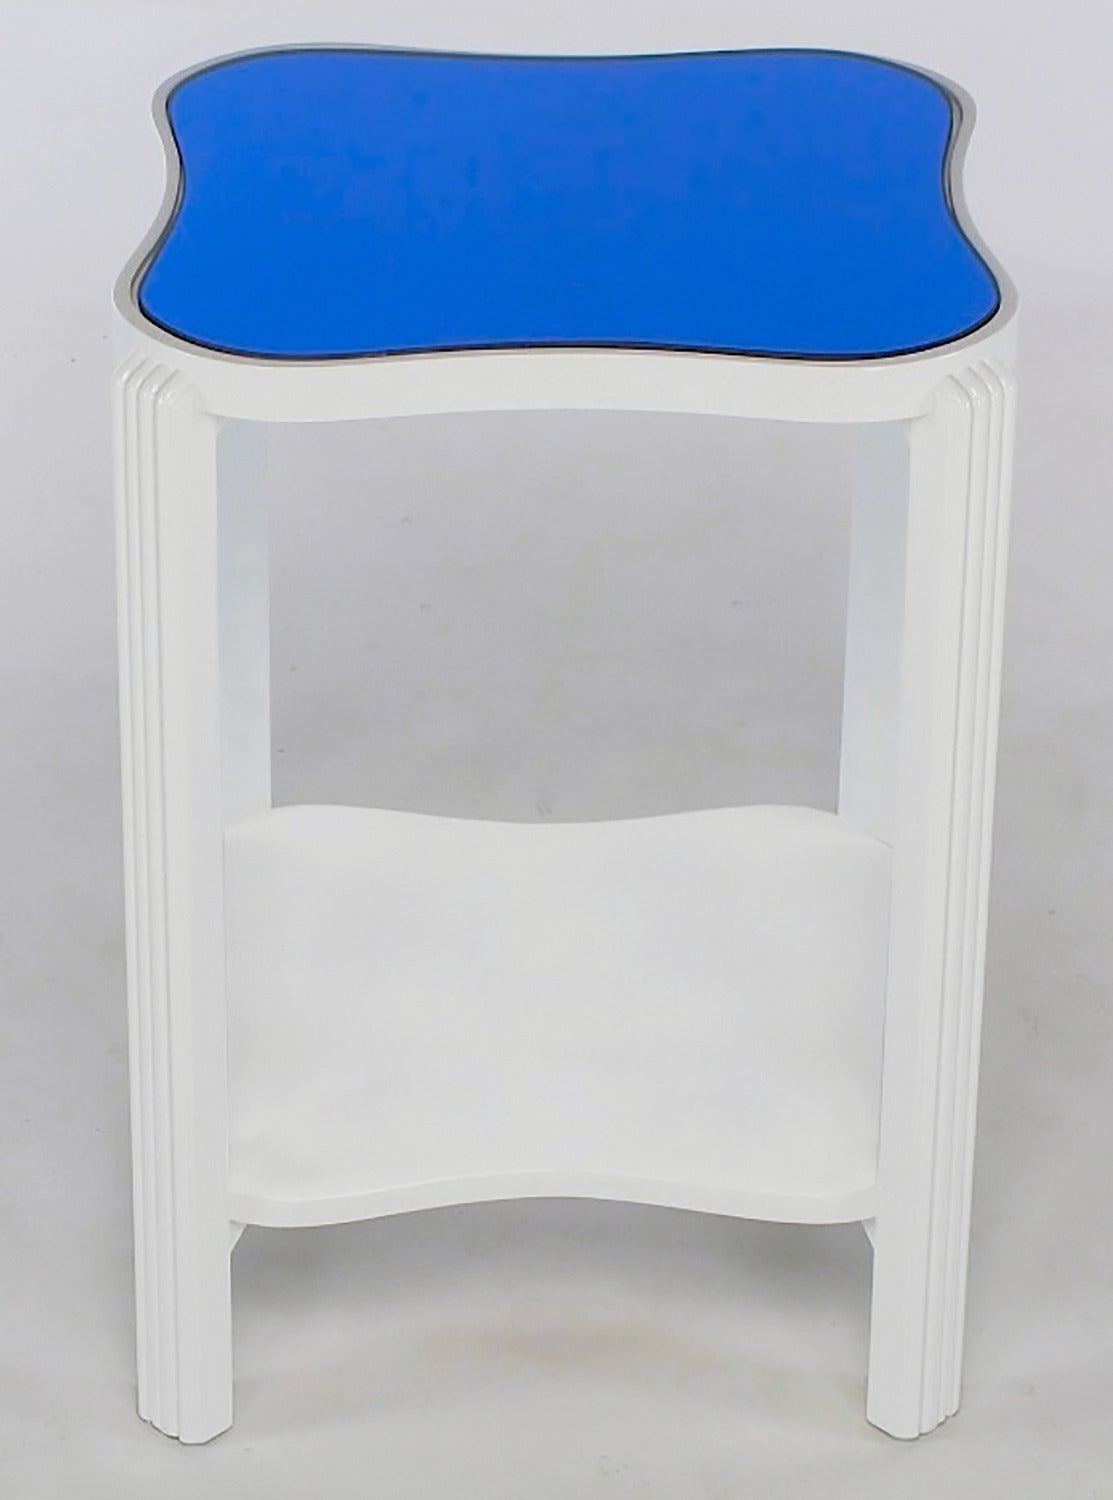 Table d'appoint Art Déco restaurée en laque blanche brillante sur érable avec plateau miroir bleu d'origine. Surface à deux niveaux en forme de nœud papillon carré ; niveau supérieur avec miroir bleu inséré et niveau inférieur avec miroir bleu ou